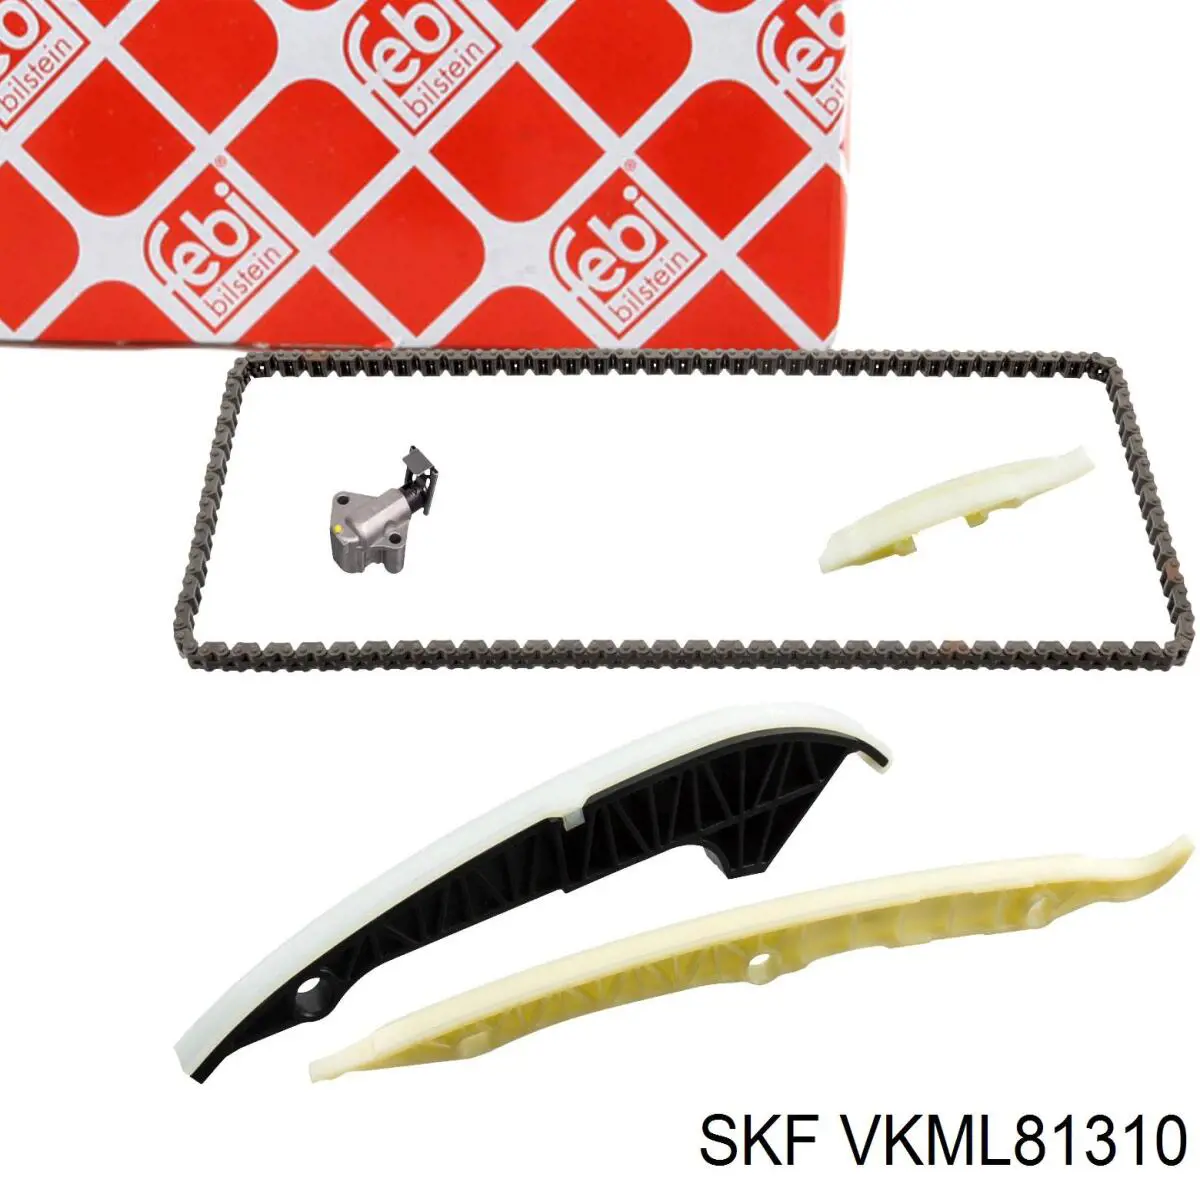 VKML 81310 SKF cadena de distribución, eje de balanceo